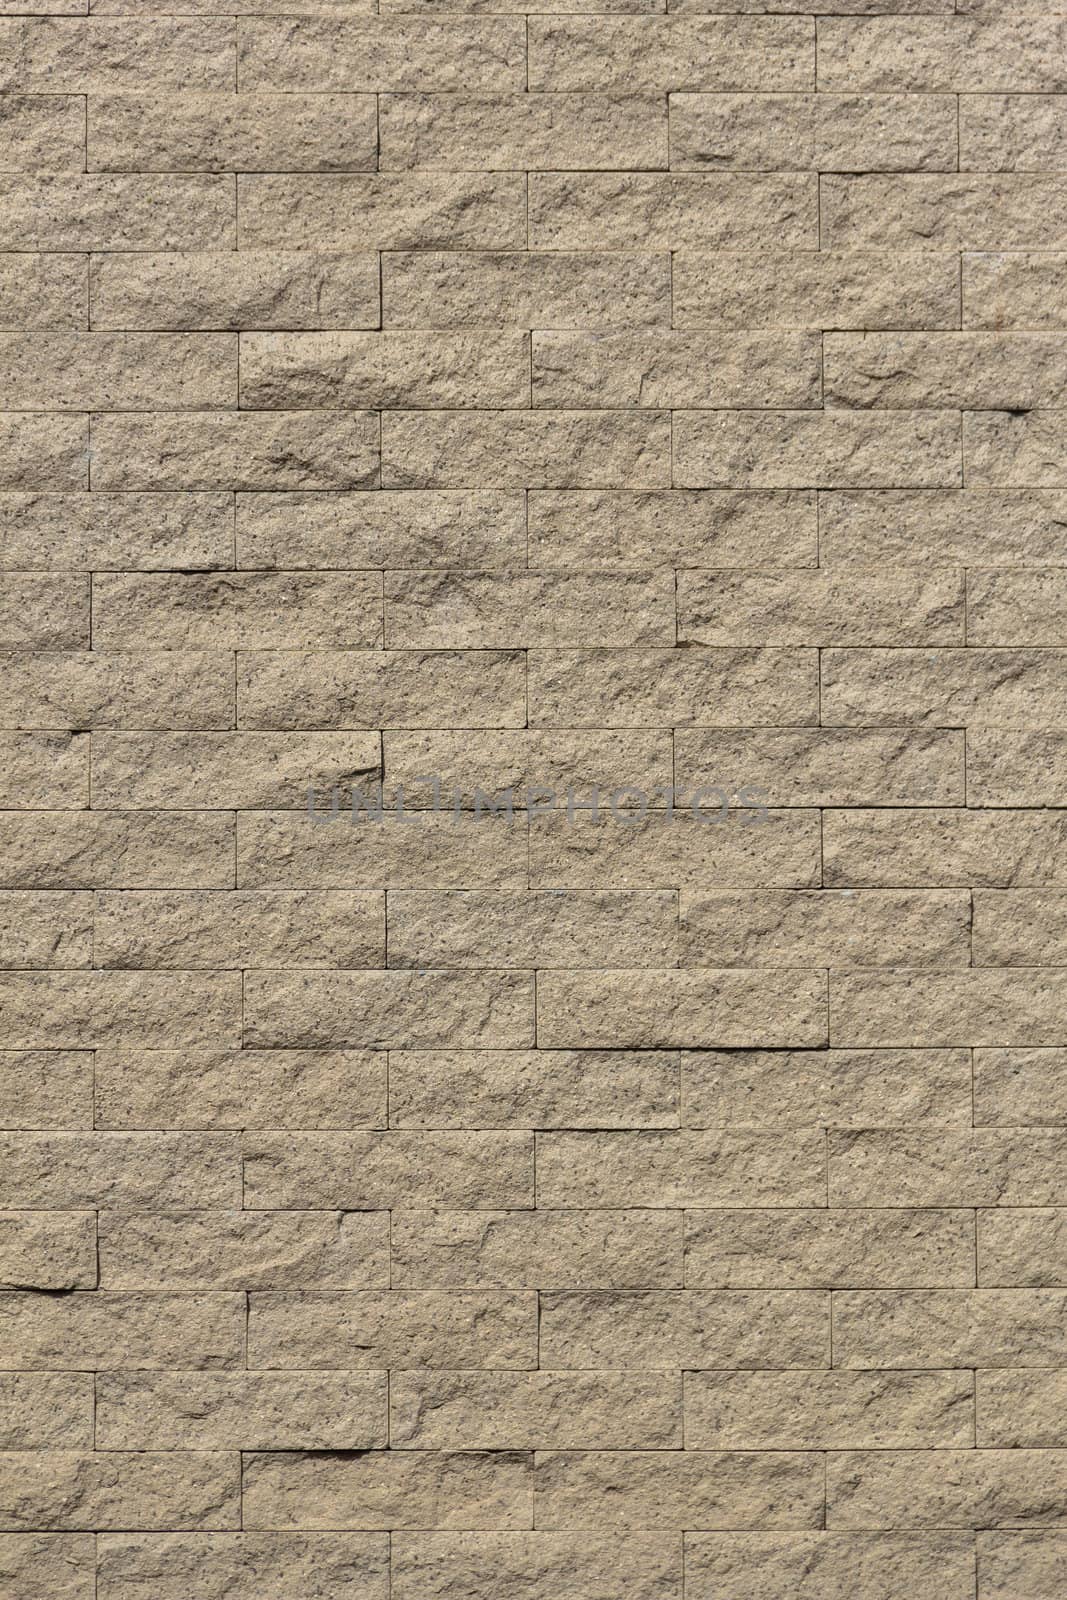 Sand stone  wall  by punpleng